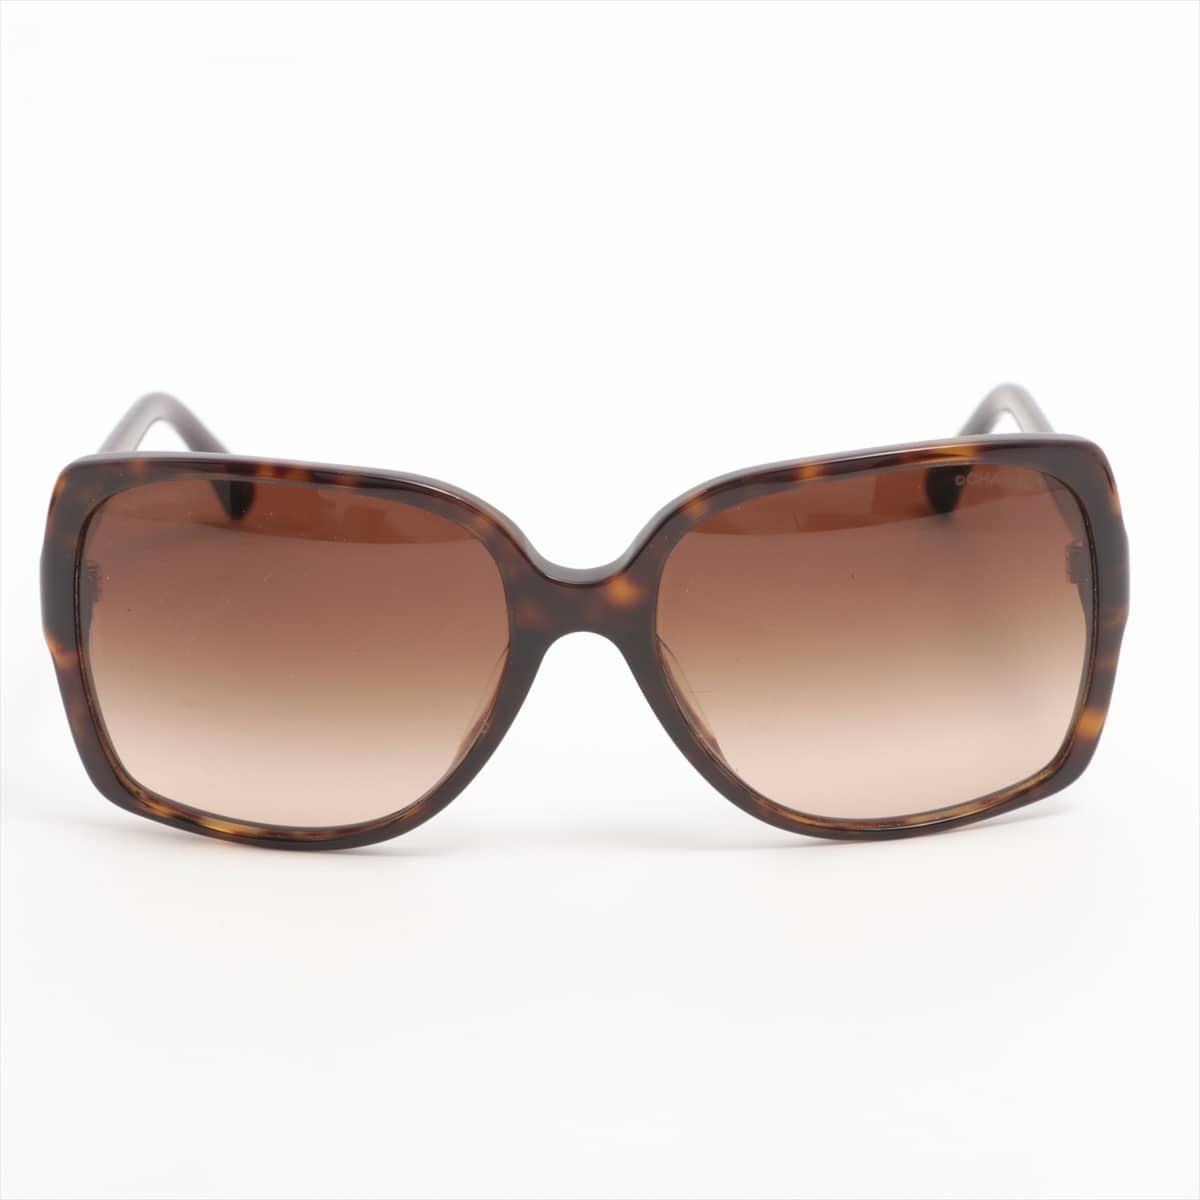 Chanel 5267-A Coco Mark Sunglasses Plastic Brown